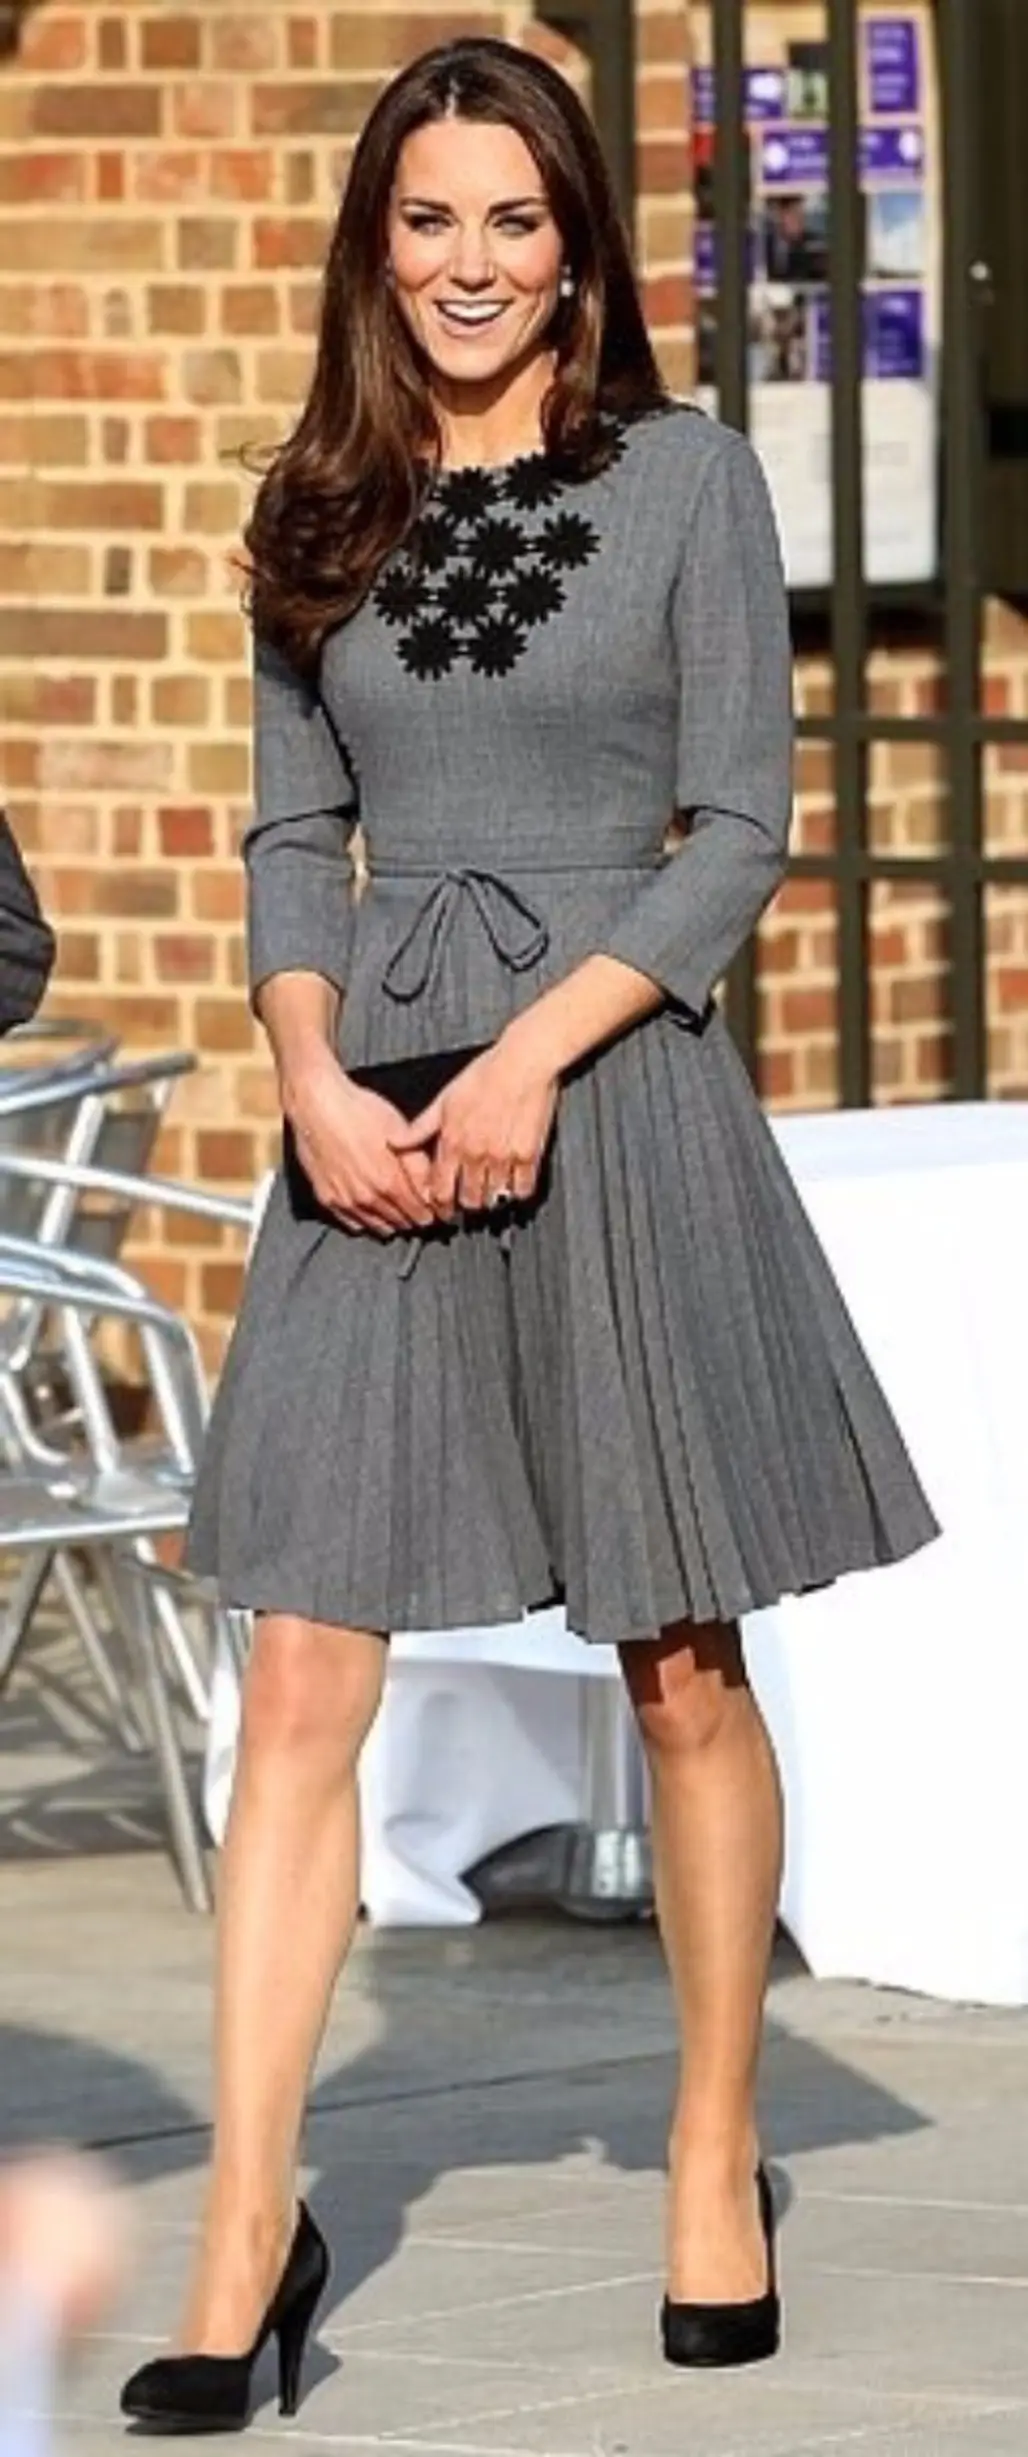 Kate Middleton as Pretty as a Princess in Vintage Grey Dress